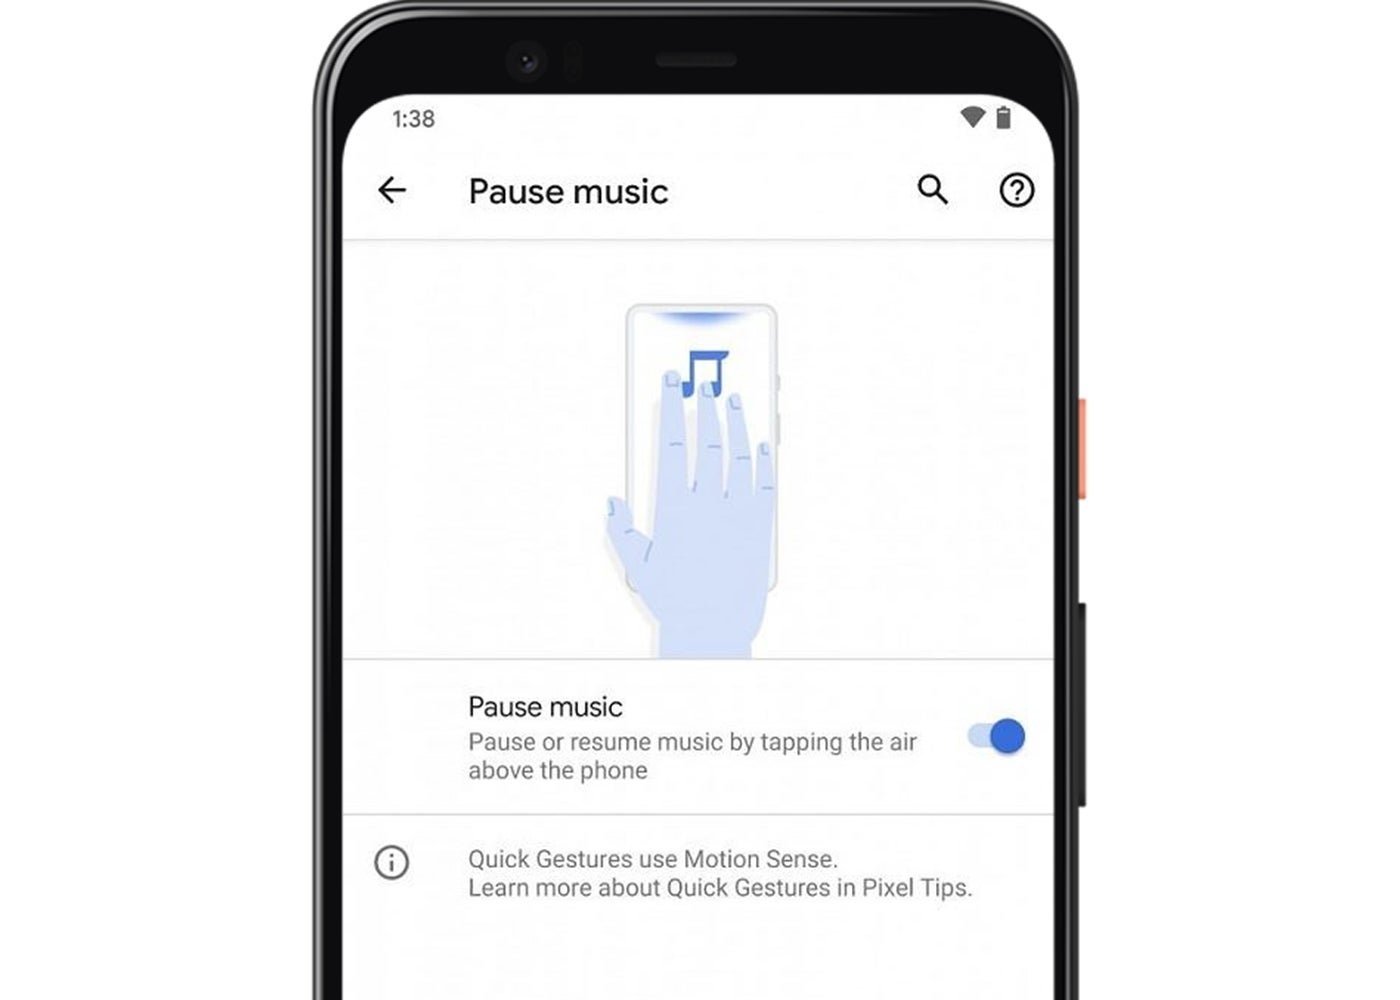 Gesto para pausar música en los Pixel 4 con Android 11